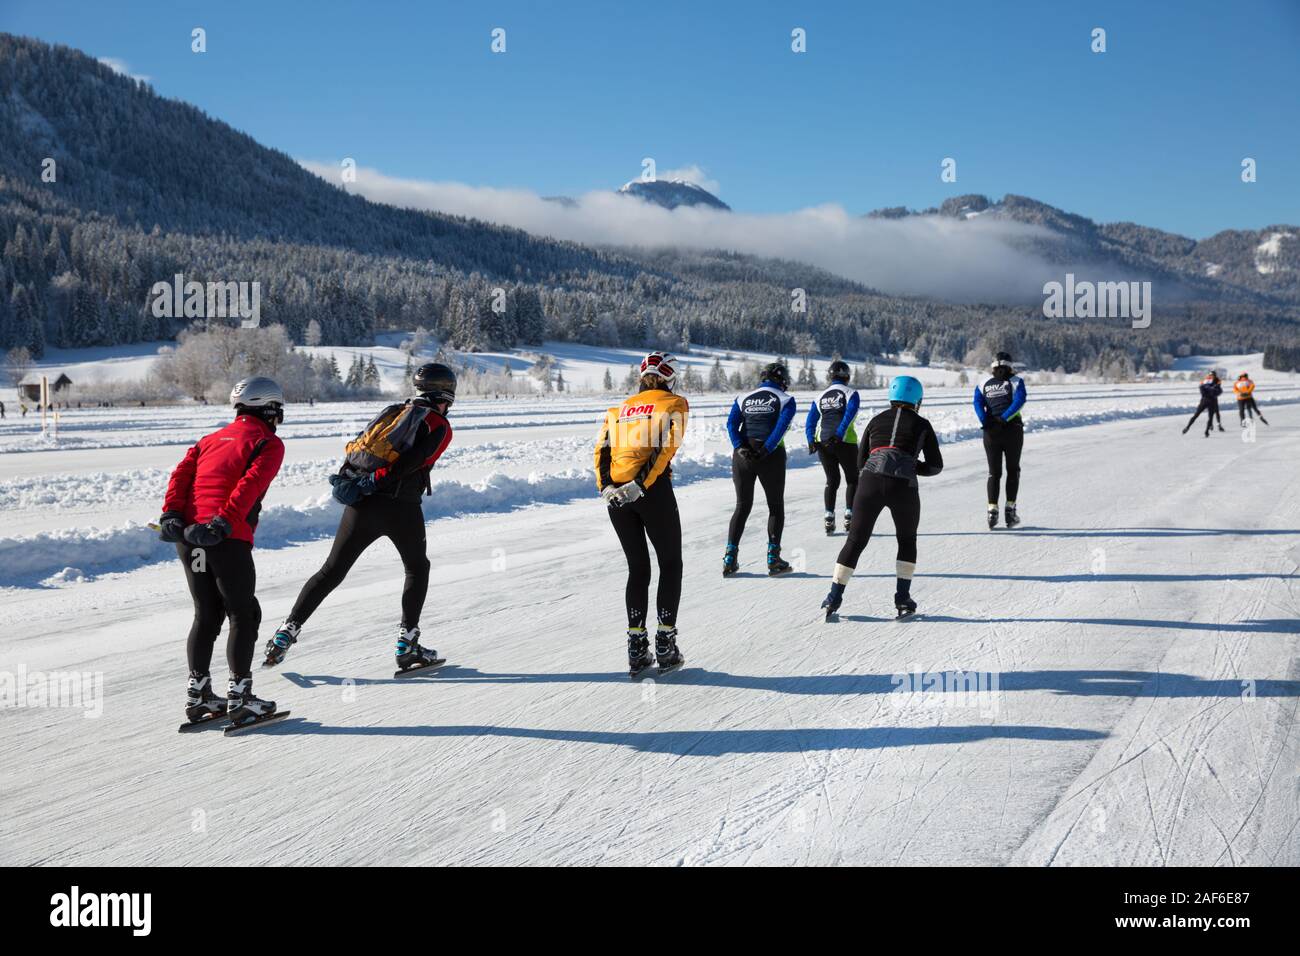 Patinar sobre hielo en el lago, en un hermoso paisaje de invierno. Los turistas disfrutar del patinaje sobre hielo en el lago congelado Weissensee, Carintia, Alpes, Austria Foto de stock